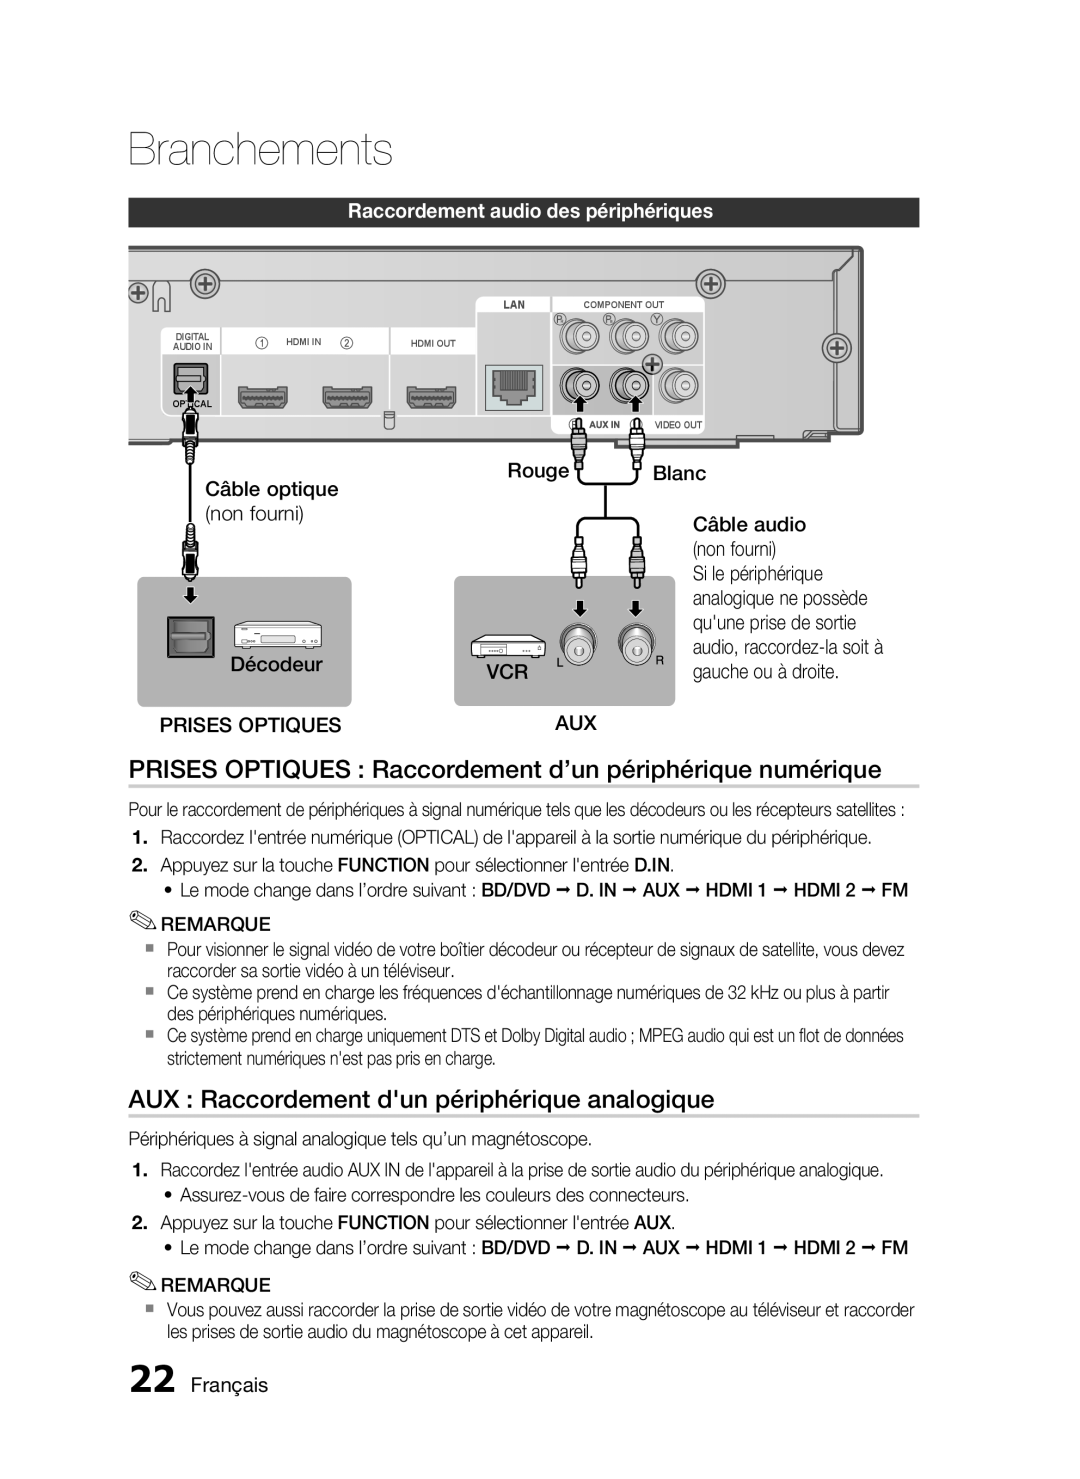 Samsung HT-C6200/XEF manual PRISES OPTIQUES Raccordement d’un périphérique numérique, Raccordement audio des périphériques 